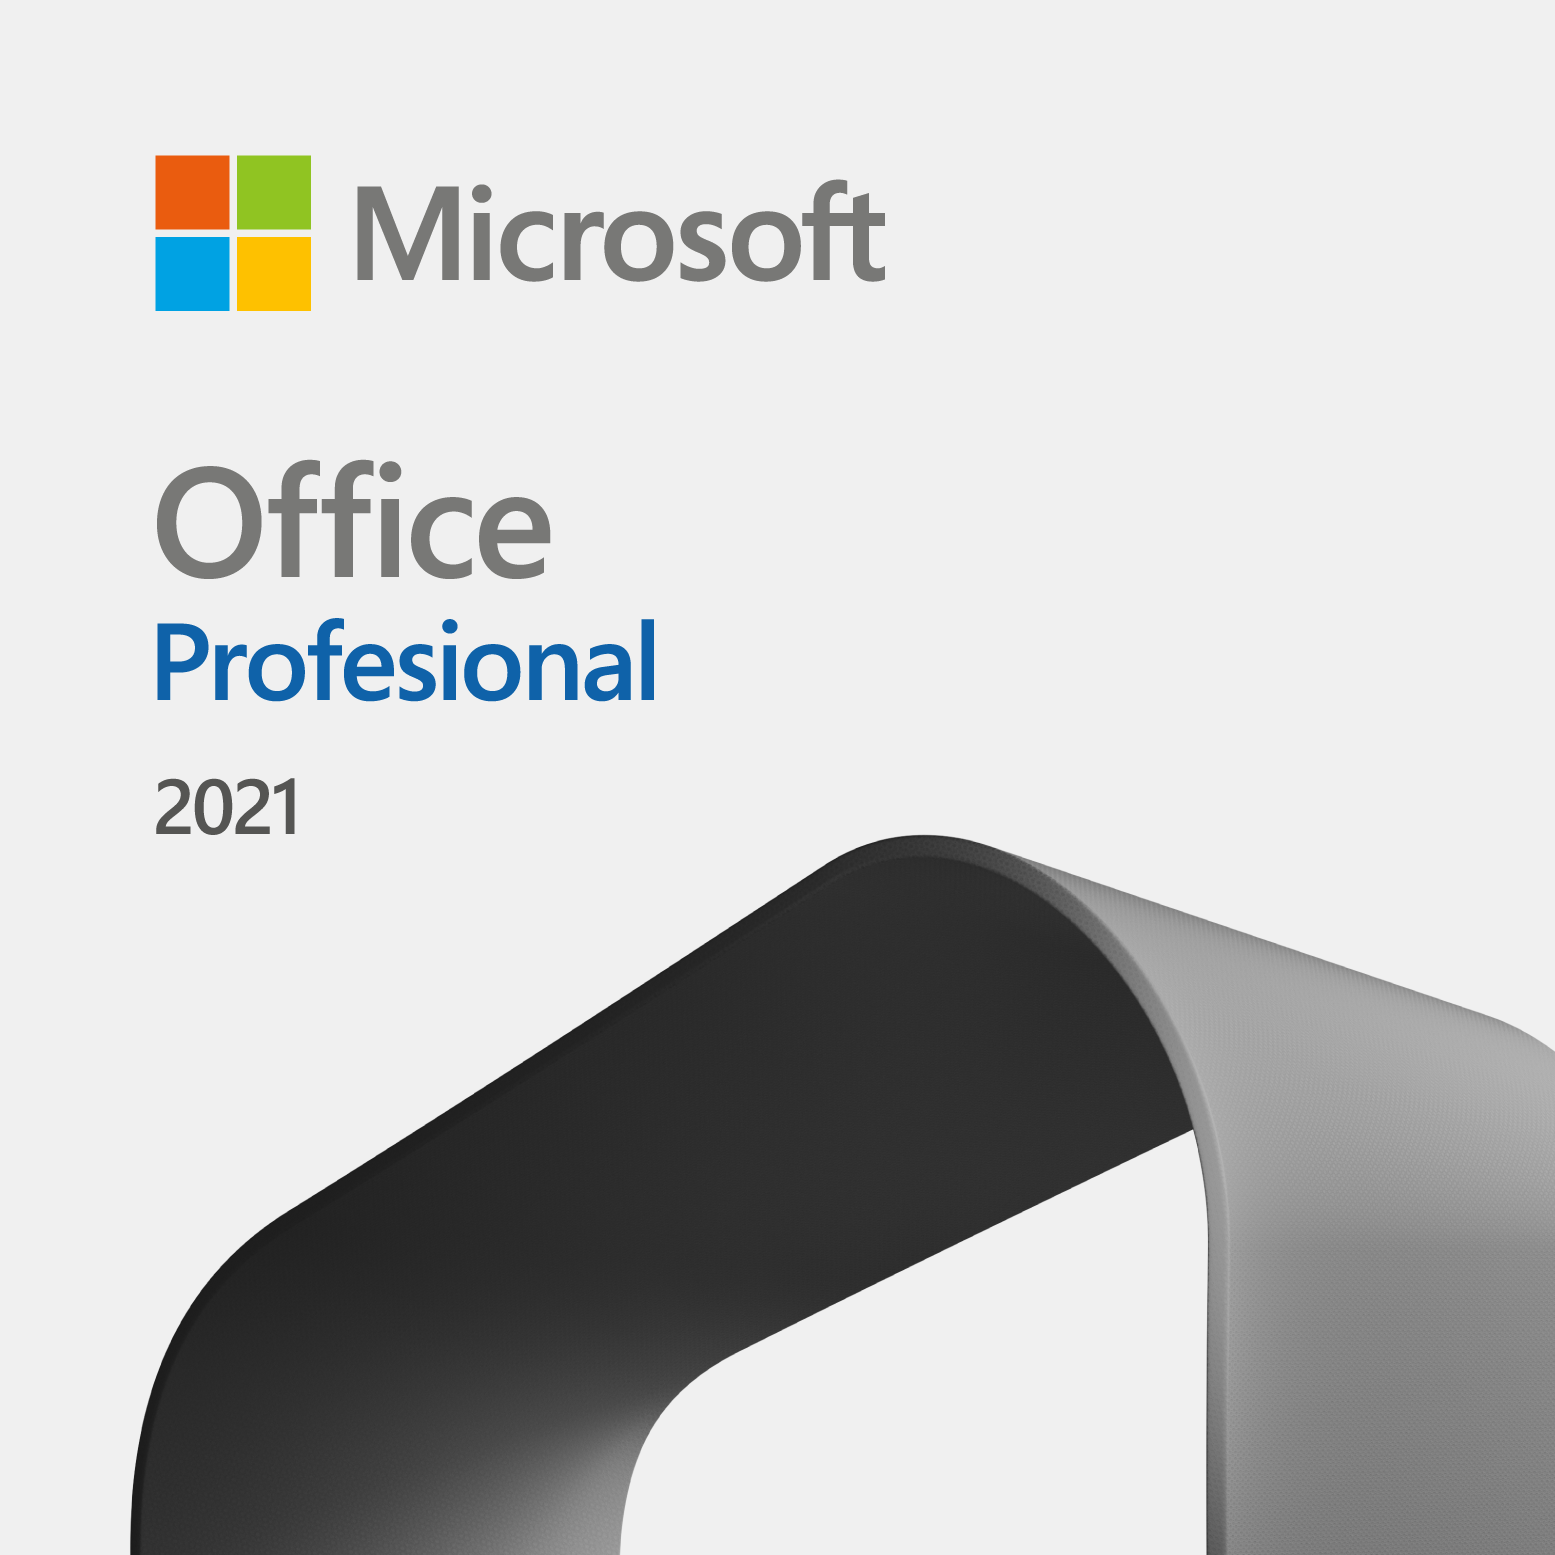 Comprar Microsoft Office Profesional 2021 - Clave de descarga y precios